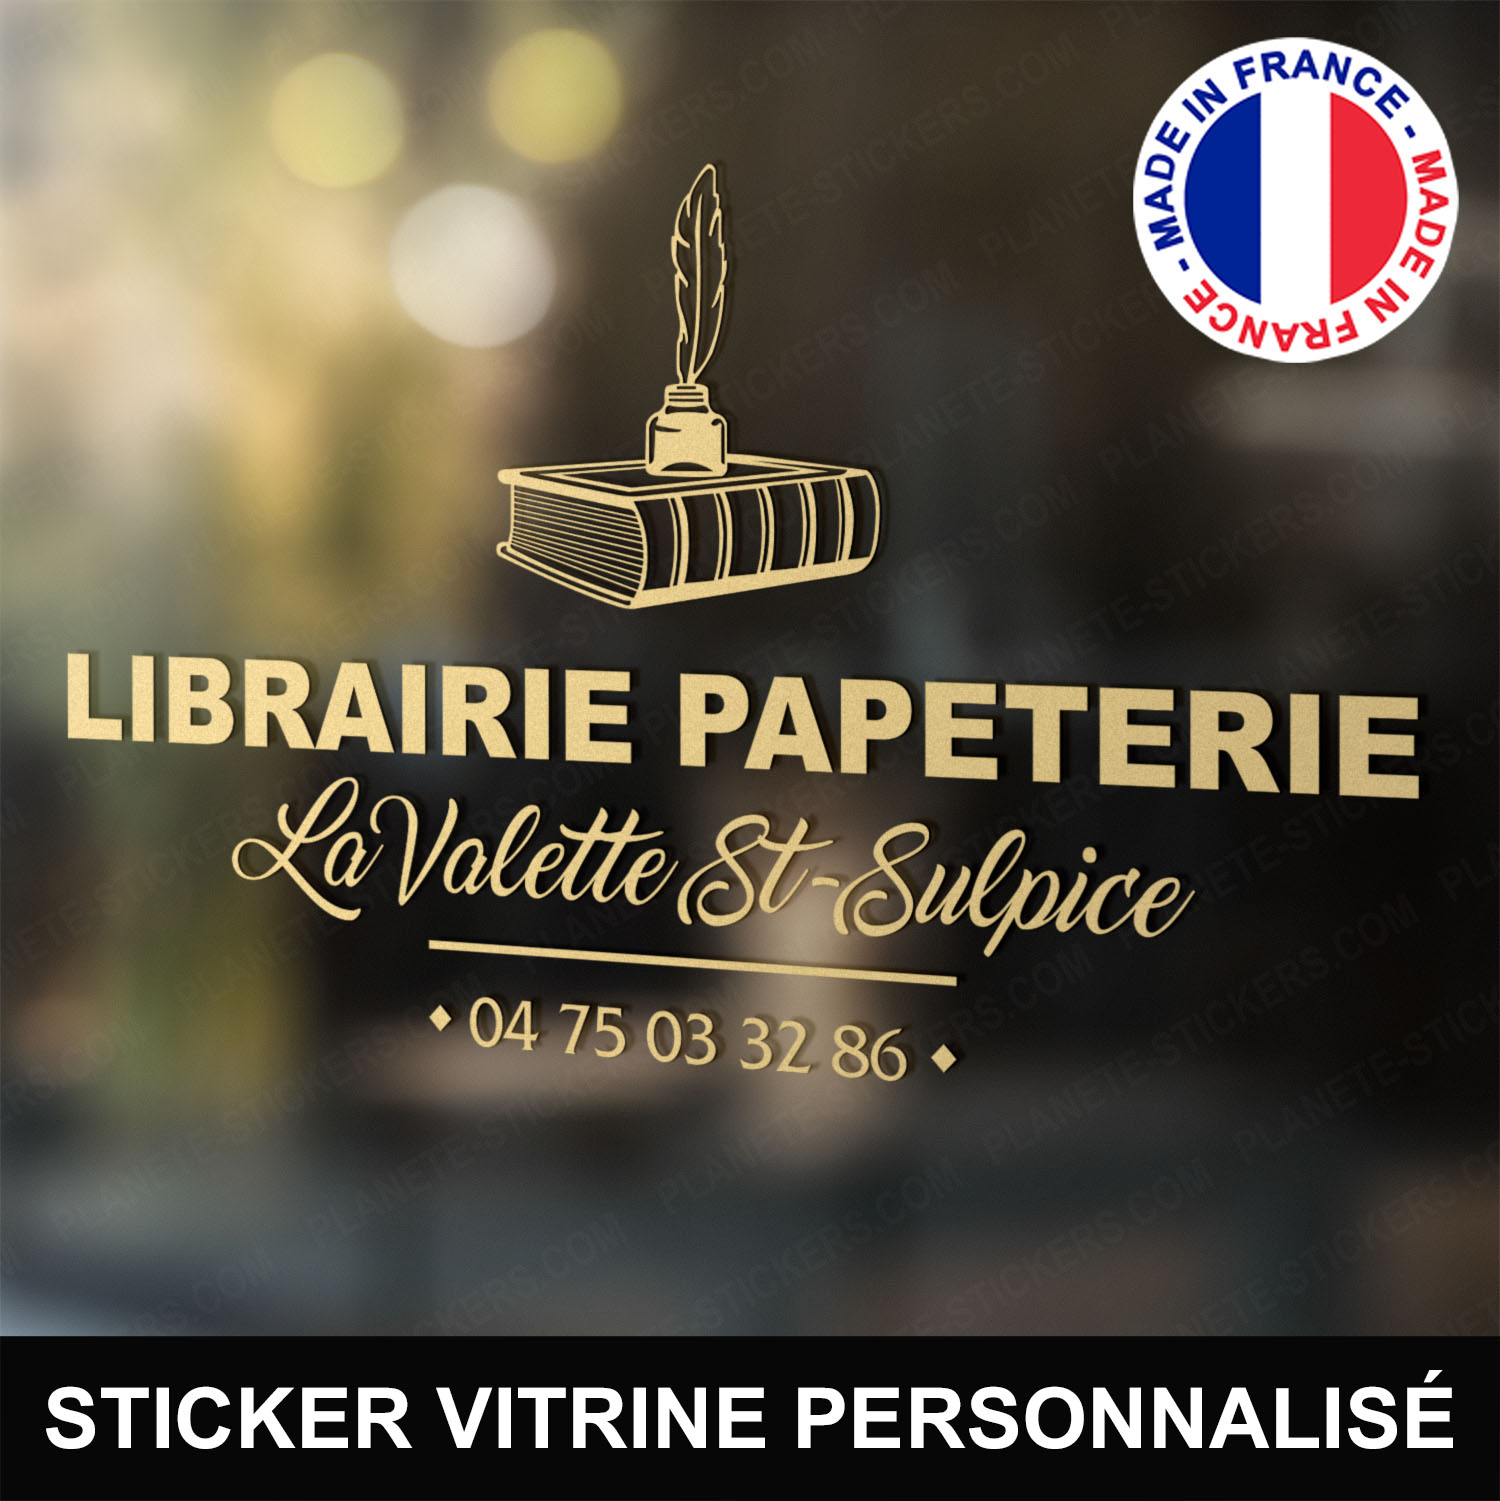 ref4librairiepapeterievitrine-stickers-librairie-papeterie-vitrine-sticker-personnalisé-autocollant-vitre-vitrophanie-logo-plume-encrier